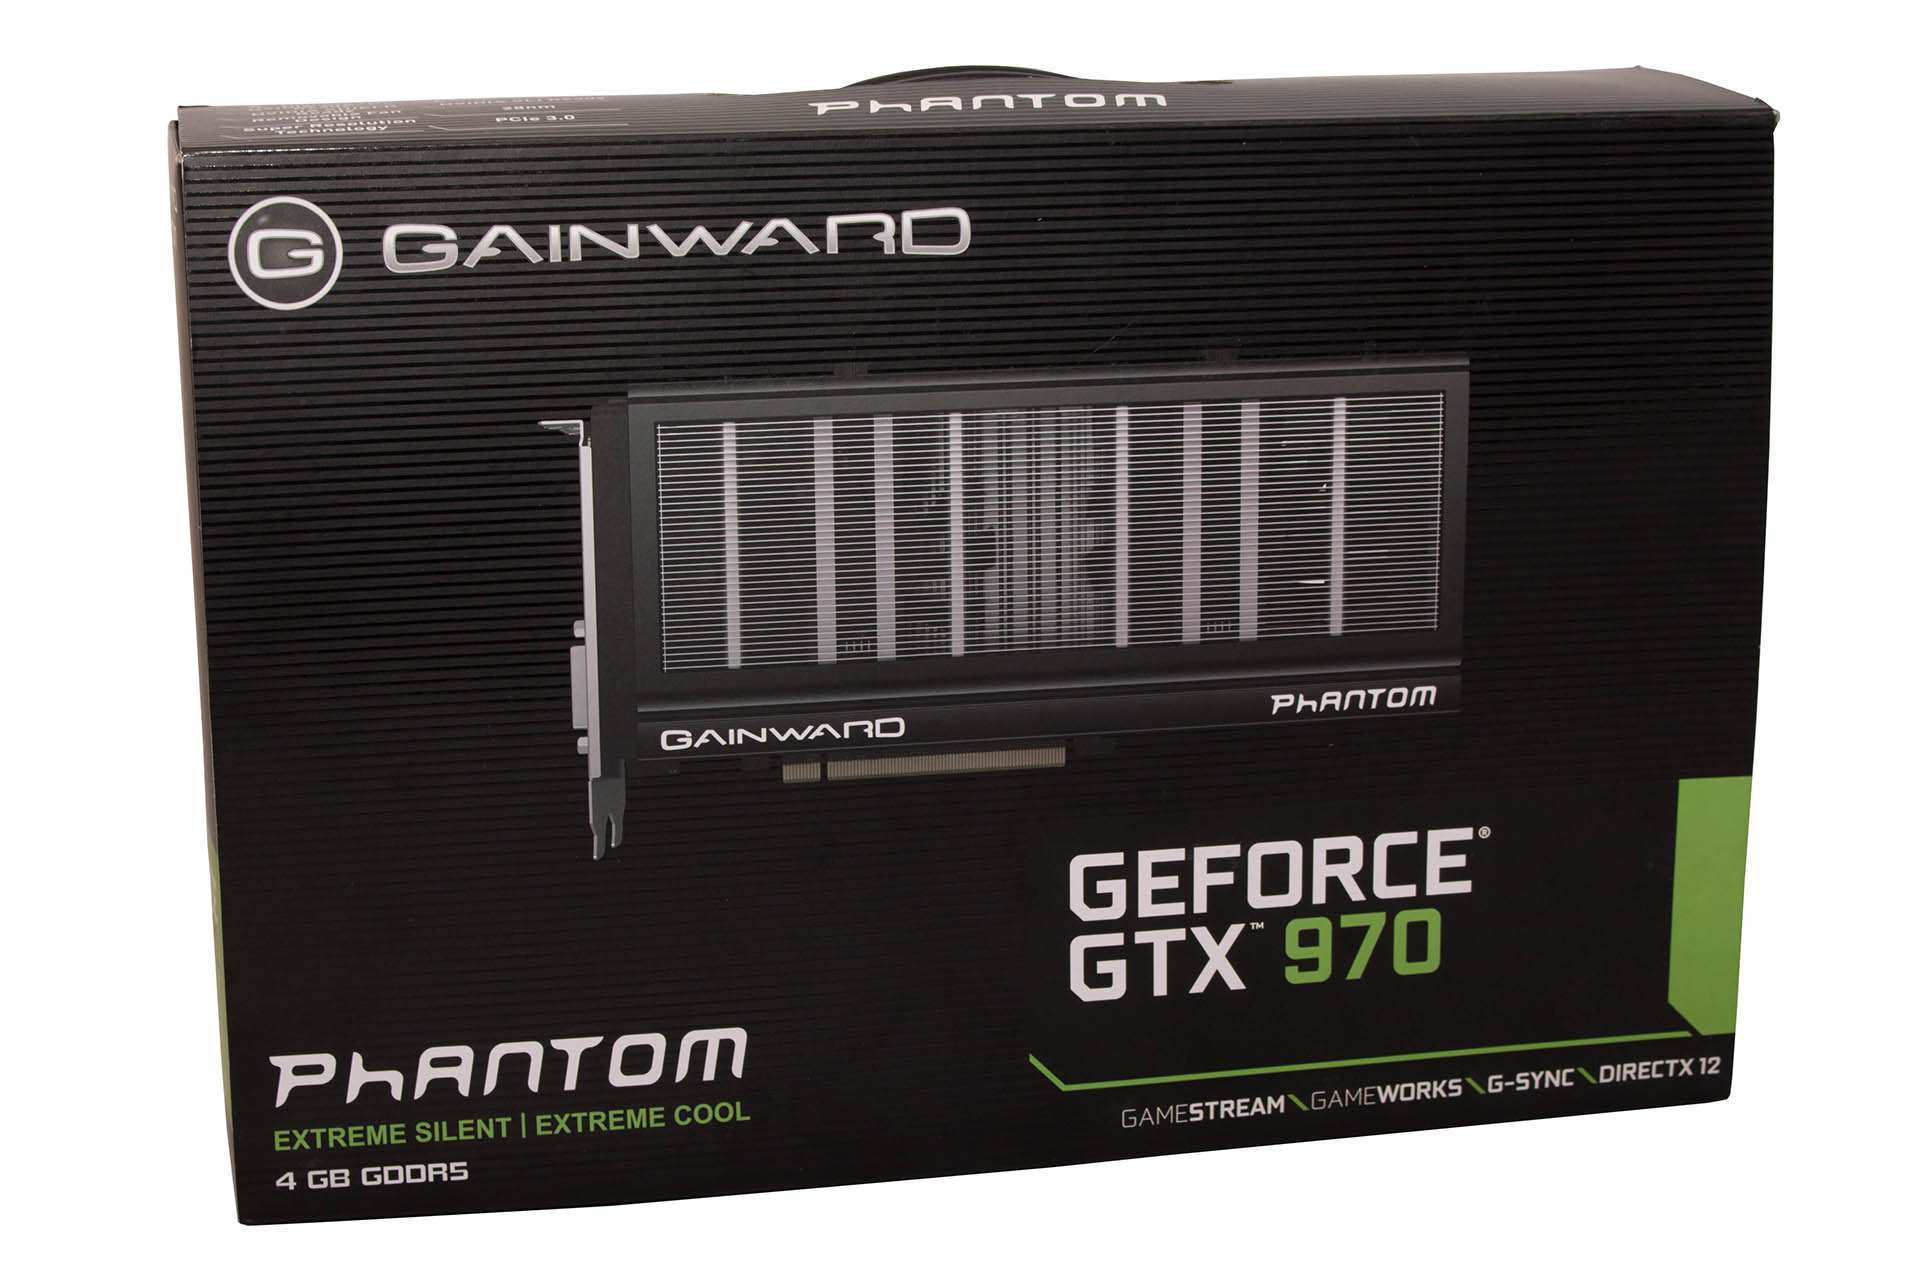 Gainward GTX970 Phantom test